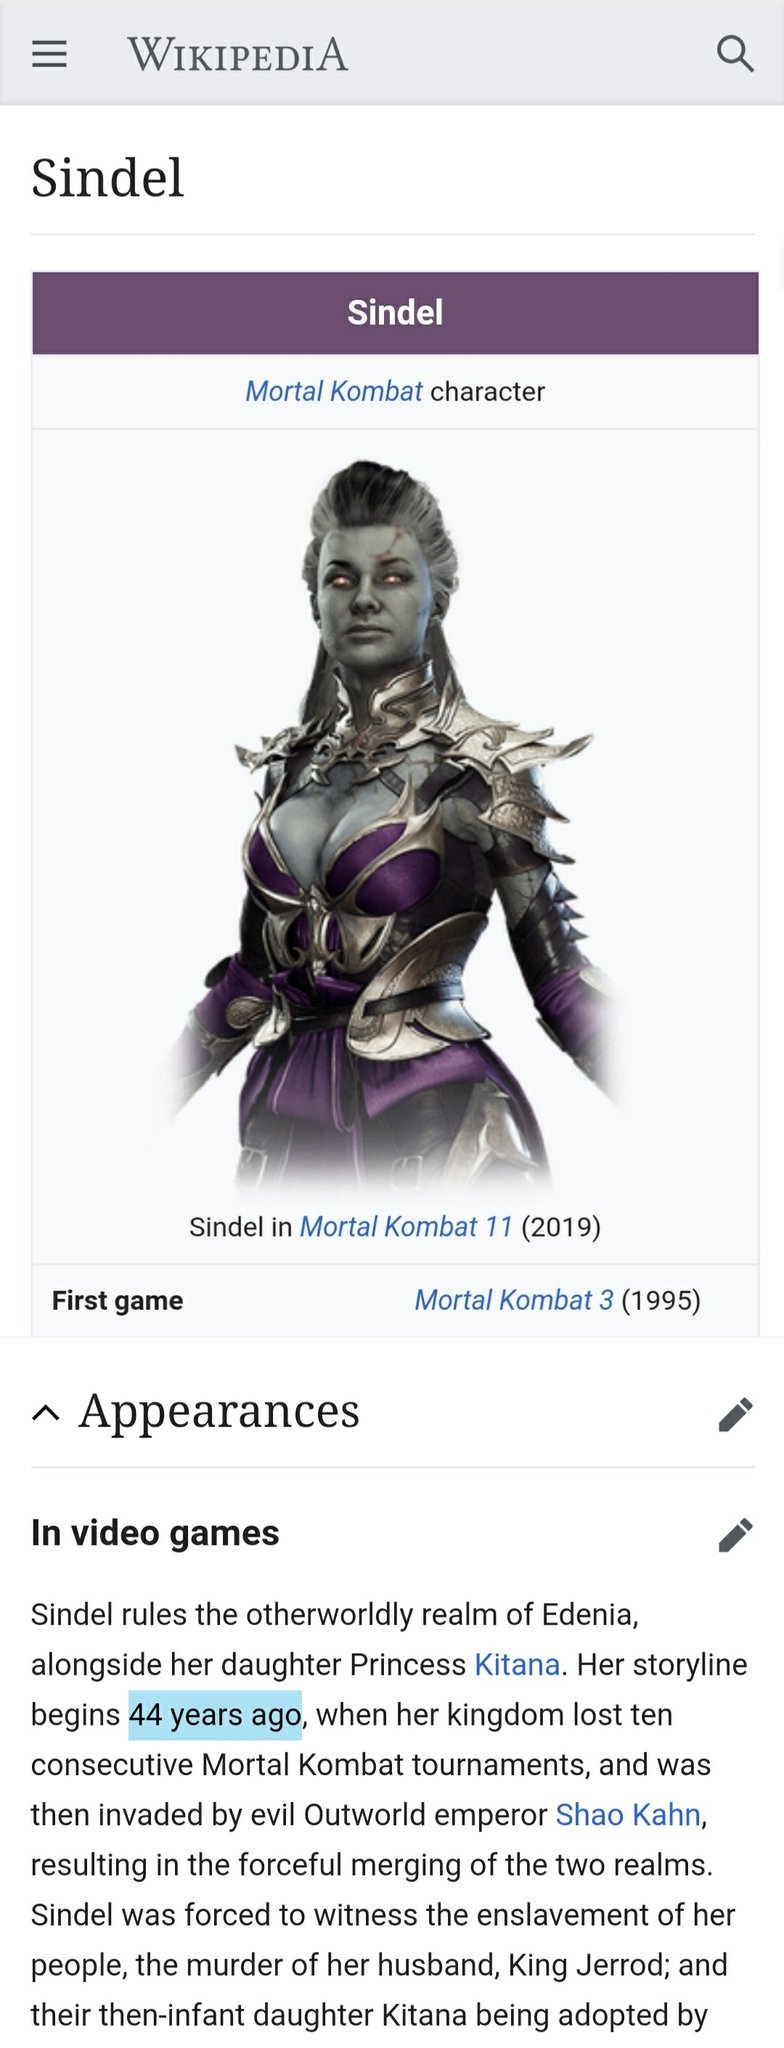 Mortal Kombat X - Wikipedia